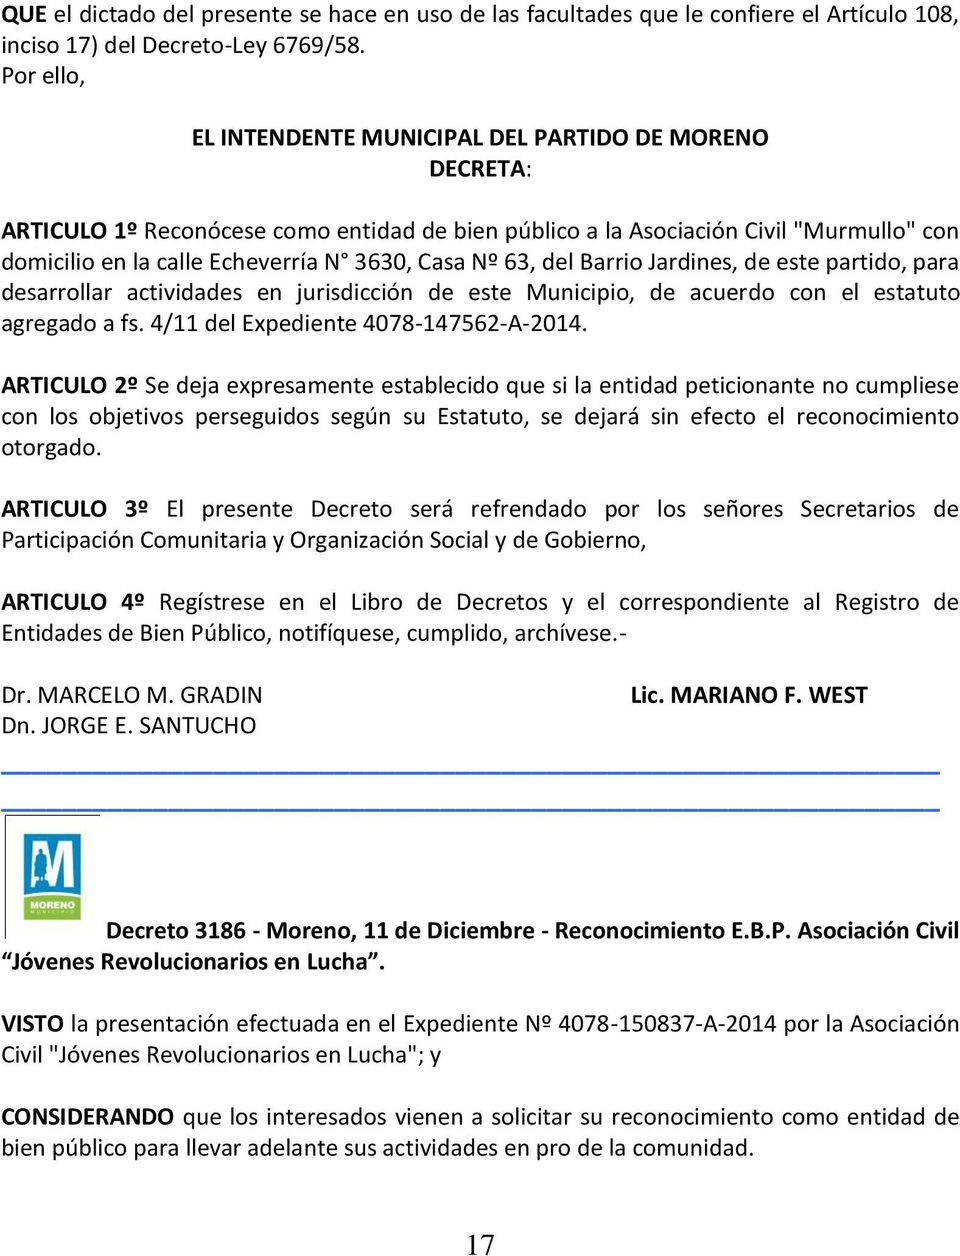 Nº 63, del Barrio Jardines, de este partido, para desarrollar actividades en jurisdicción de este Municipio, de acuerdo con el estatuto agregado a fs. 4/11 del Expediente 4078-147562-A-2014.